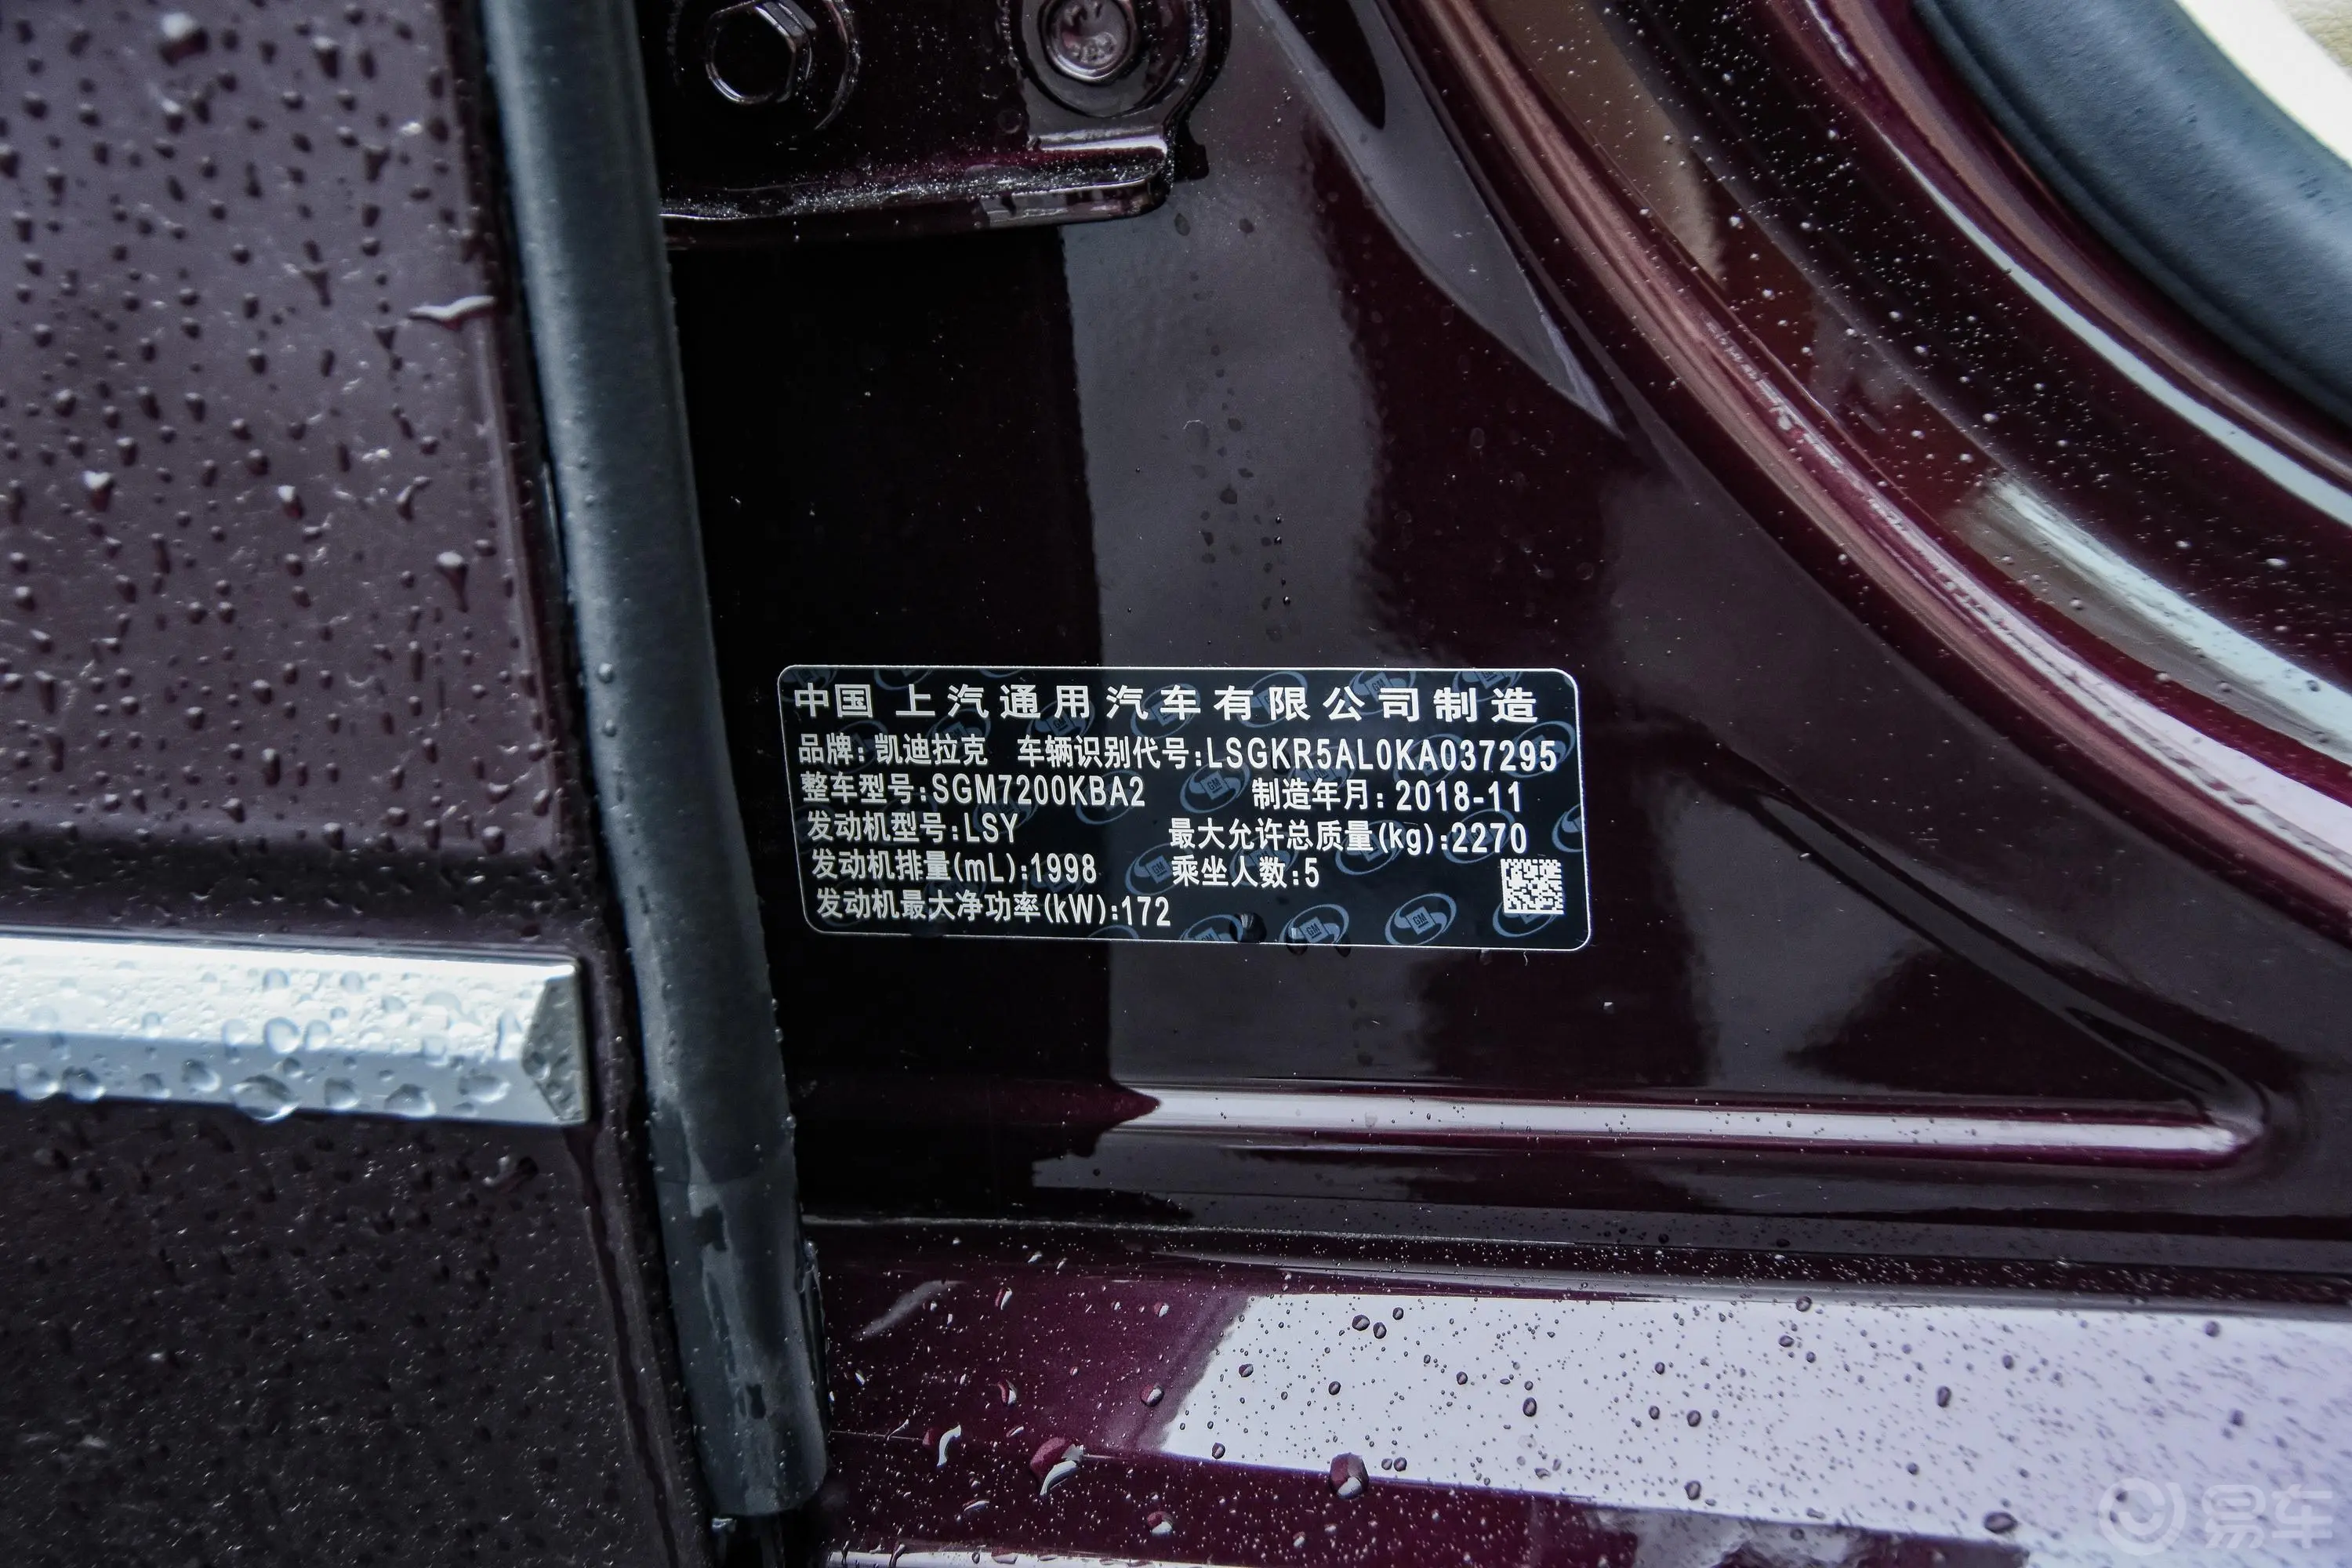 凯迪拉克CT628T 两驱 铂金版车辆信息铭牌